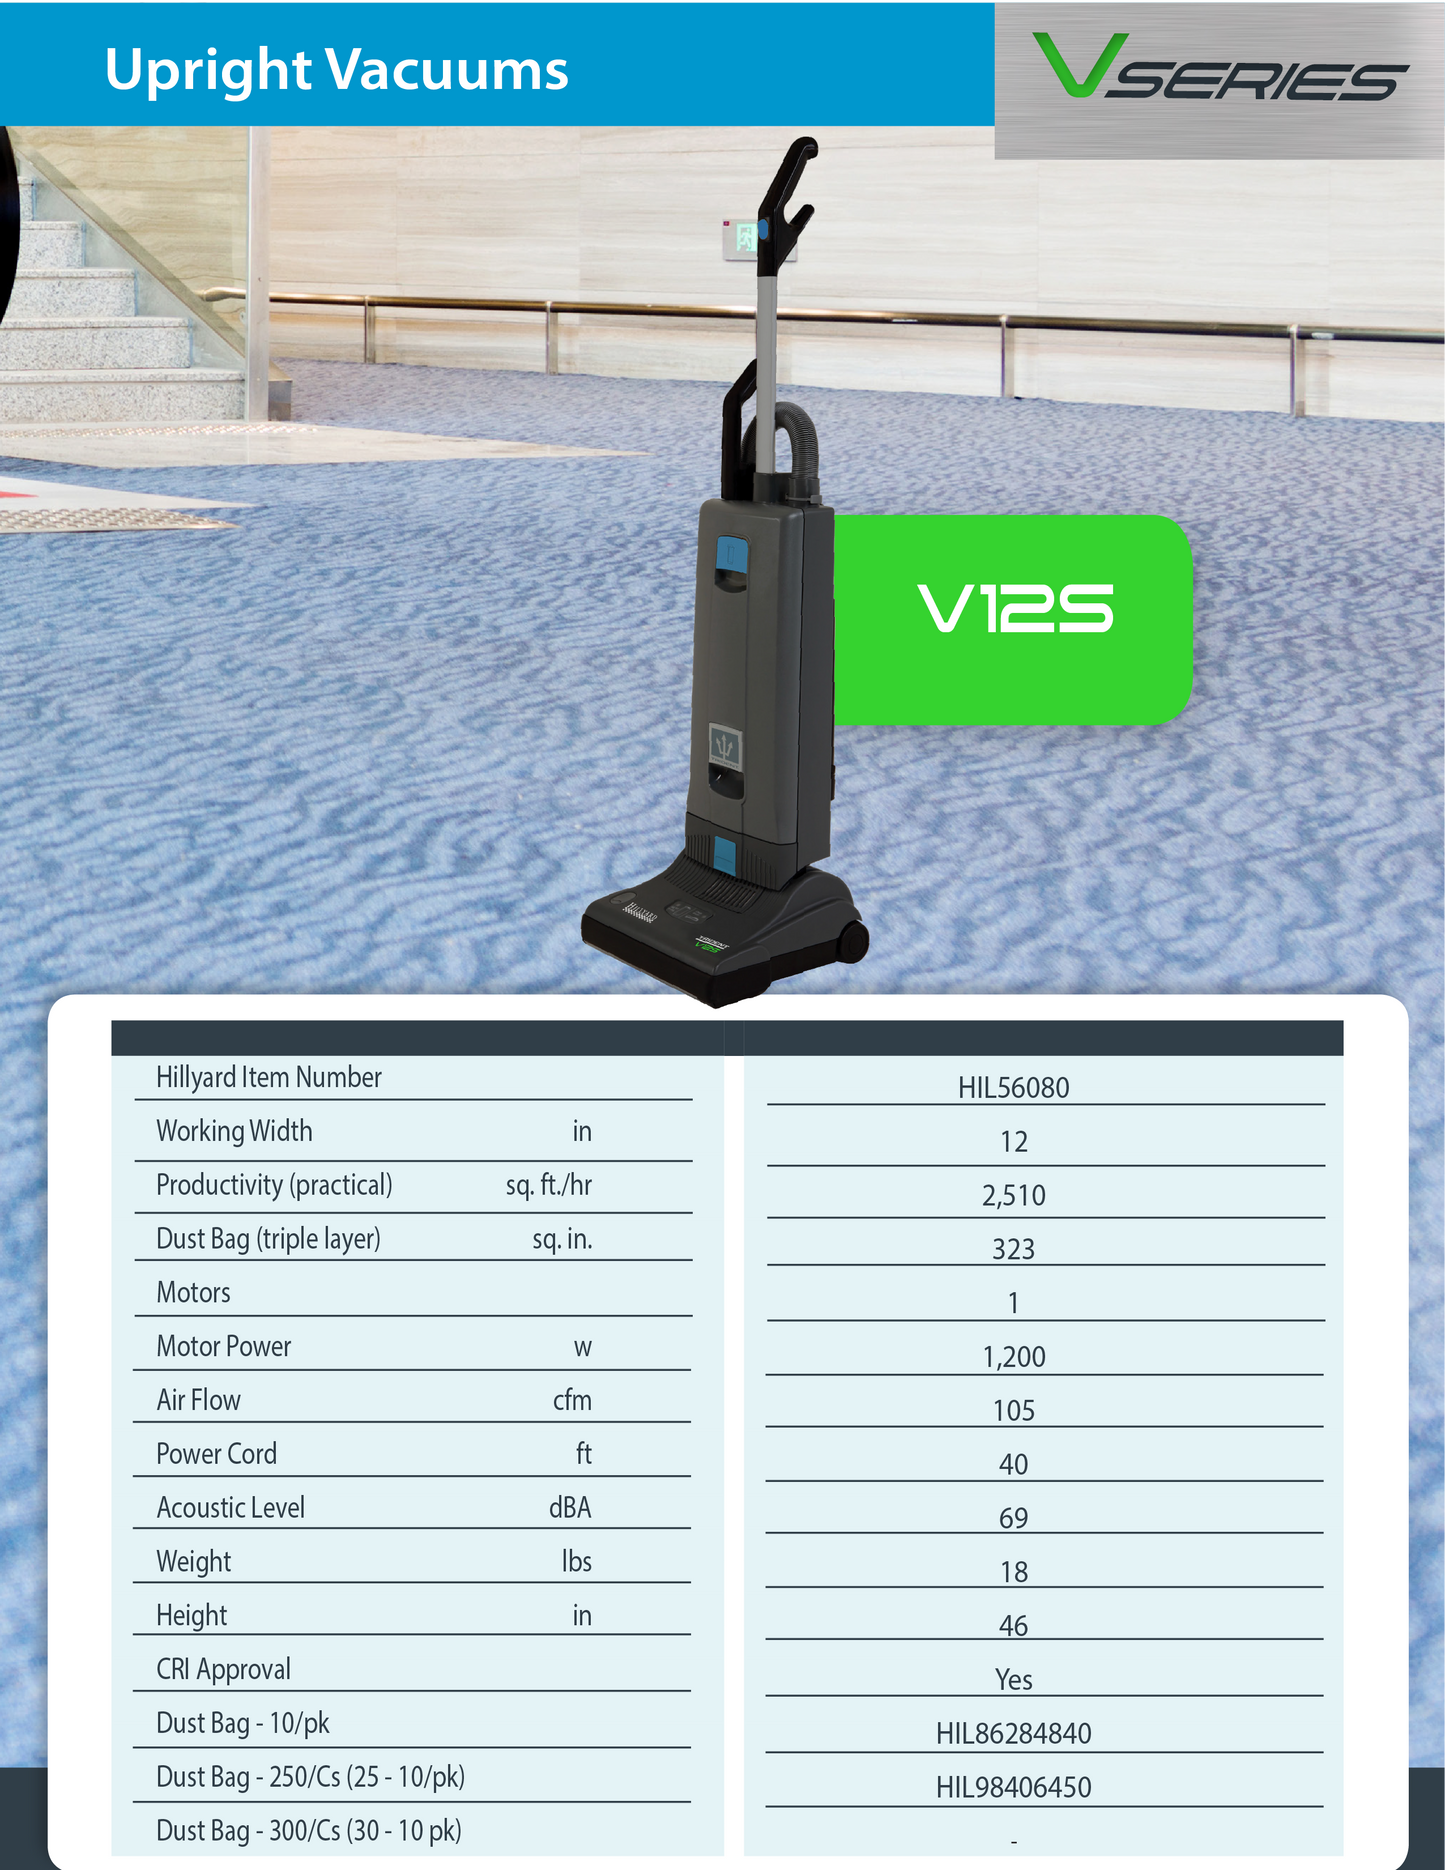 Hillyard Upright Vacuum V12S